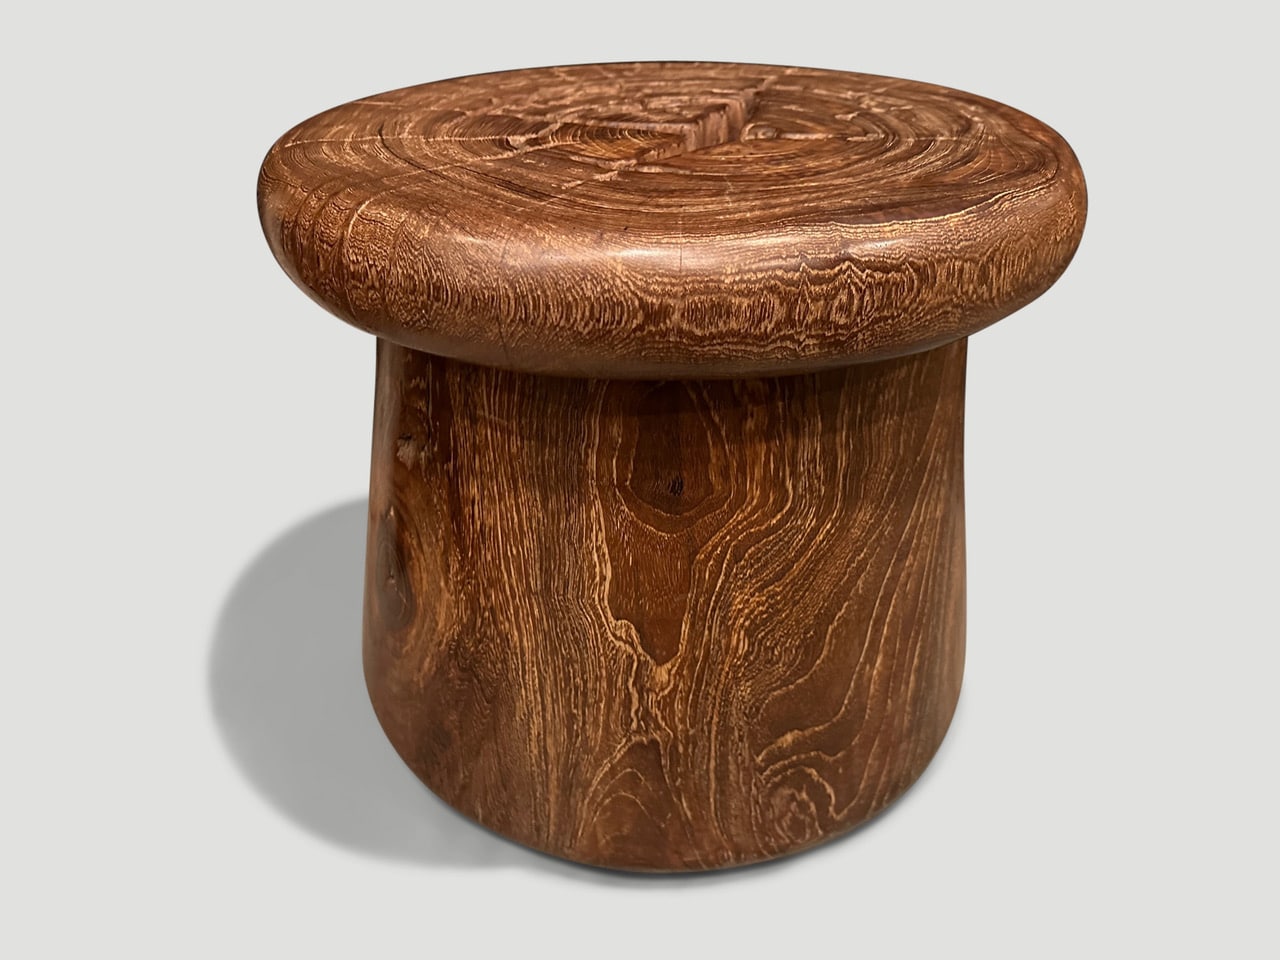 century old teak wood side table